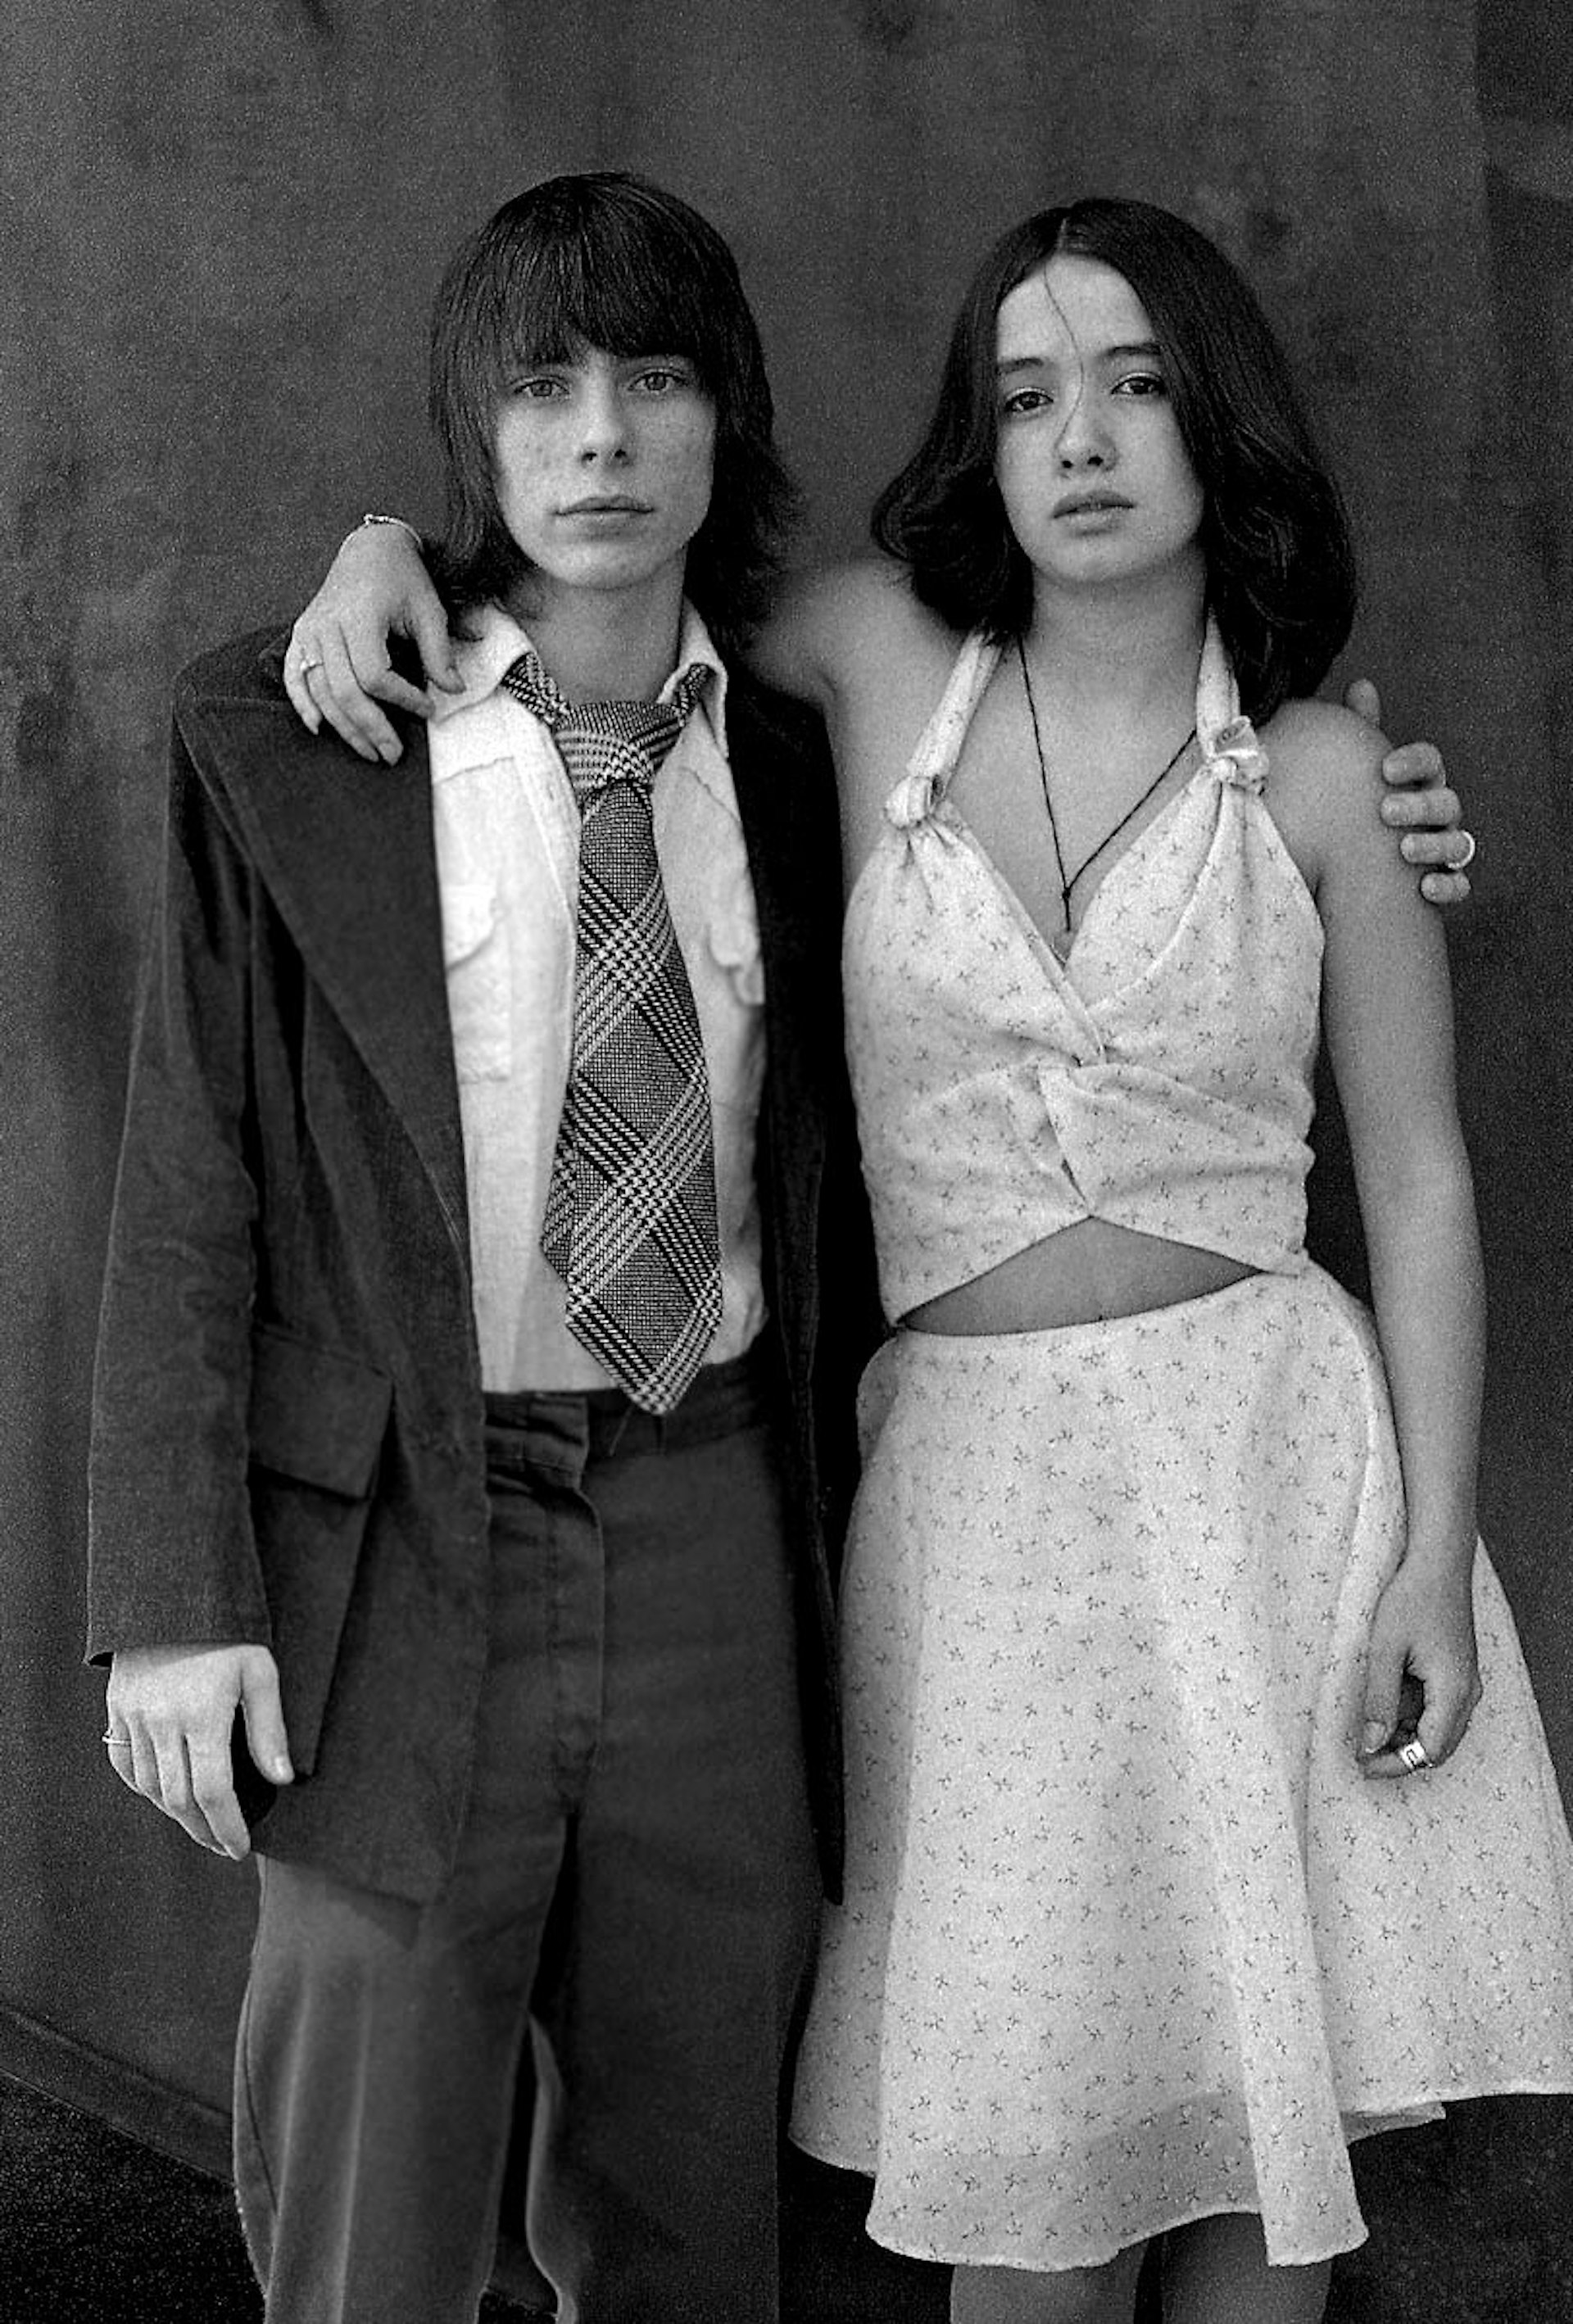 Wedding couple NYC, 1973